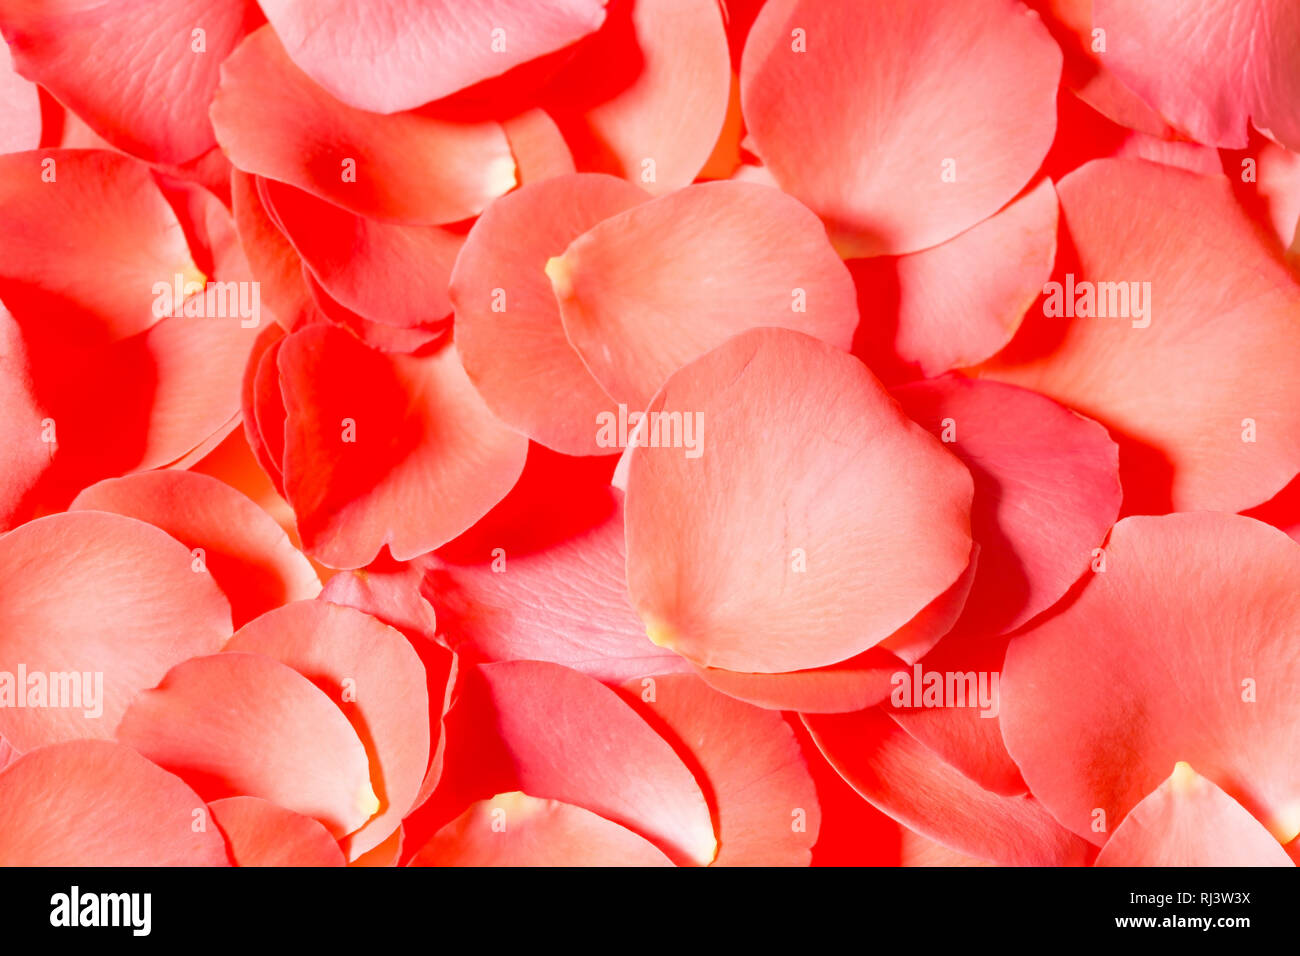 Red rose petals close up Stock Photo